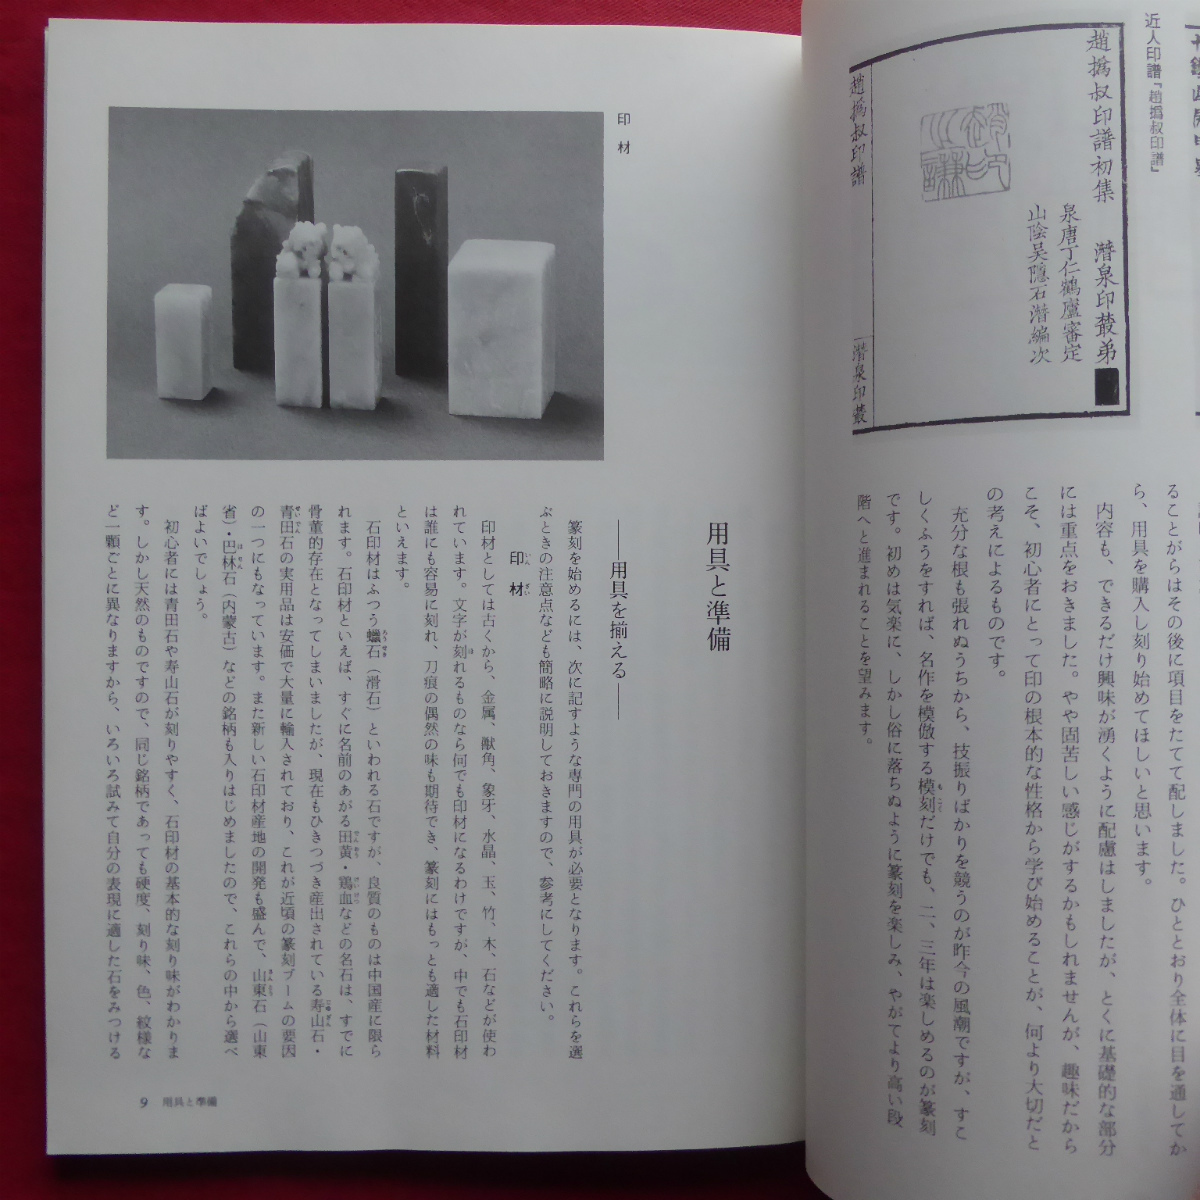 θ21/ cow .. 10 work [... did ..book@/ two . company * Showa era 62 year ] tool . preparation /... real ./... base / seal. ....